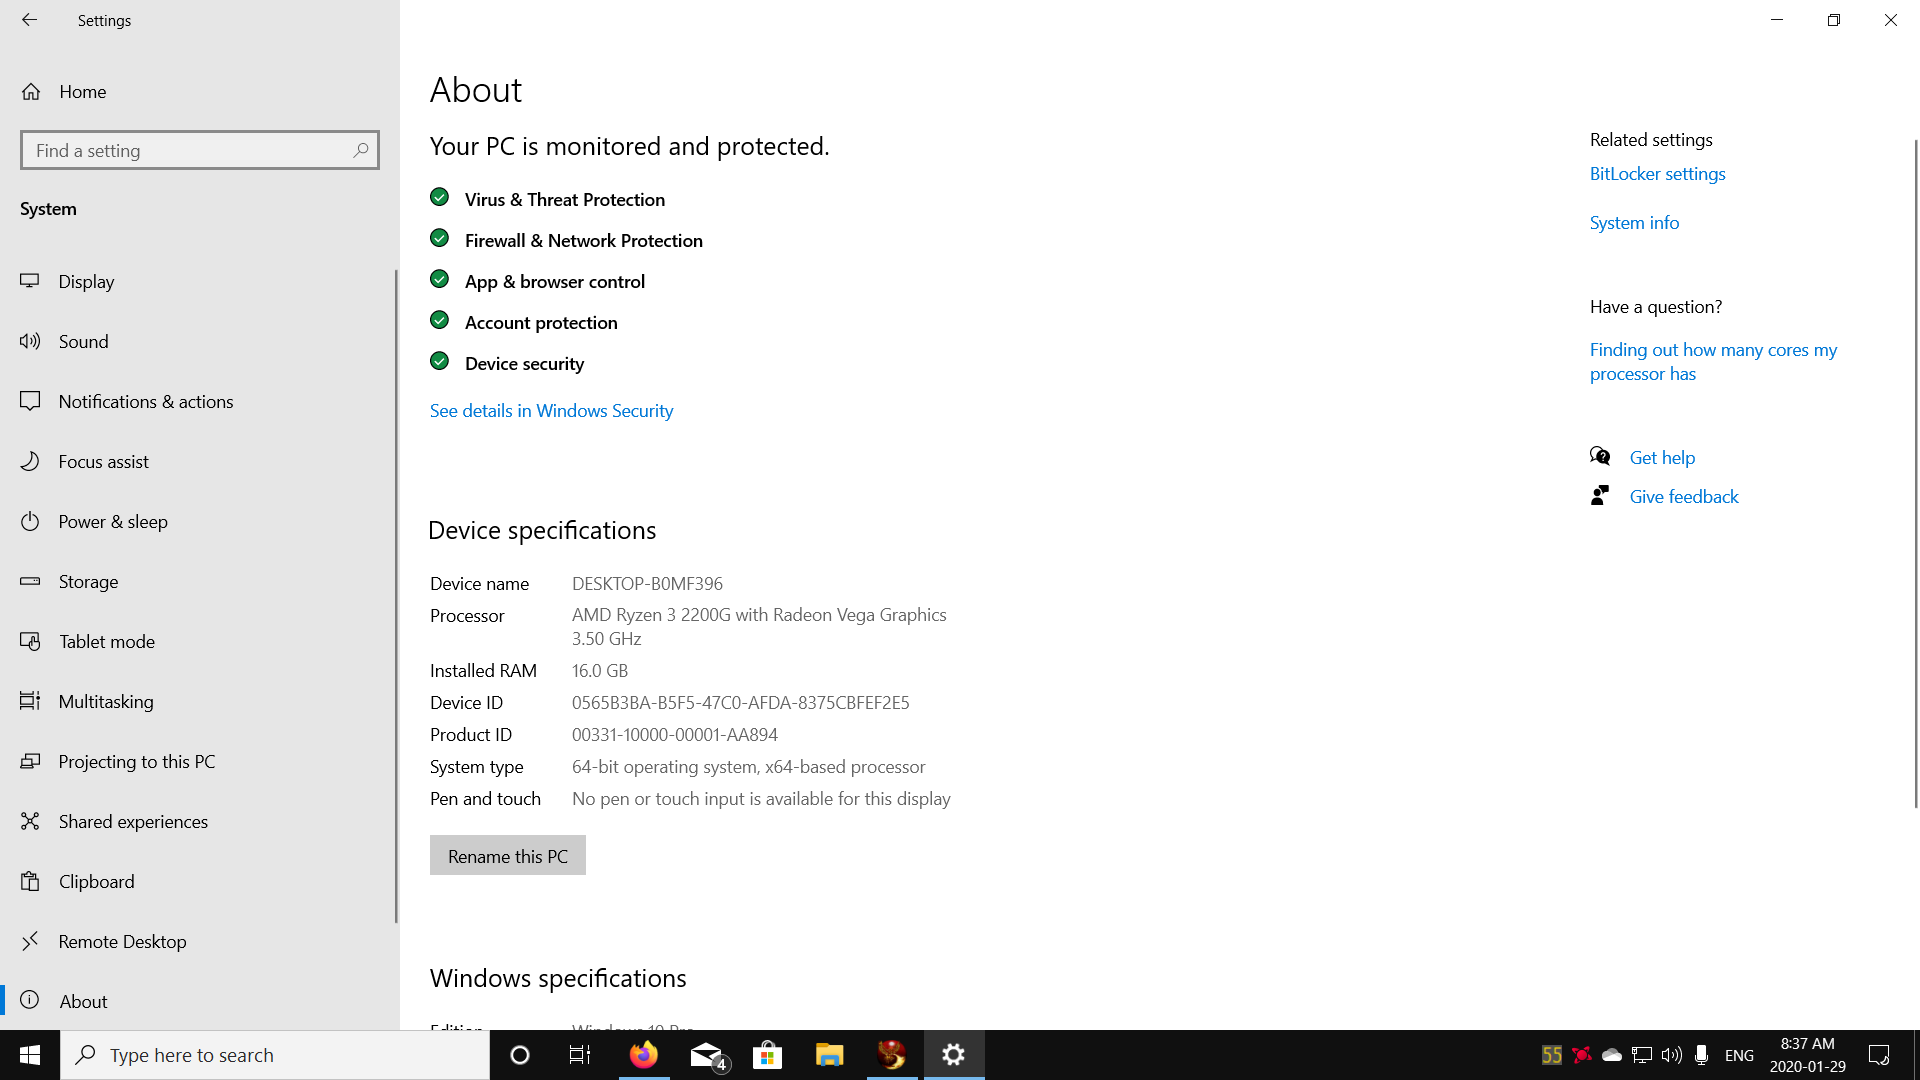 Windows 10 Screen Dim Issue 0cbc2fdd-5db3-4b23-9154-a980e899e4e4?upload=true.png